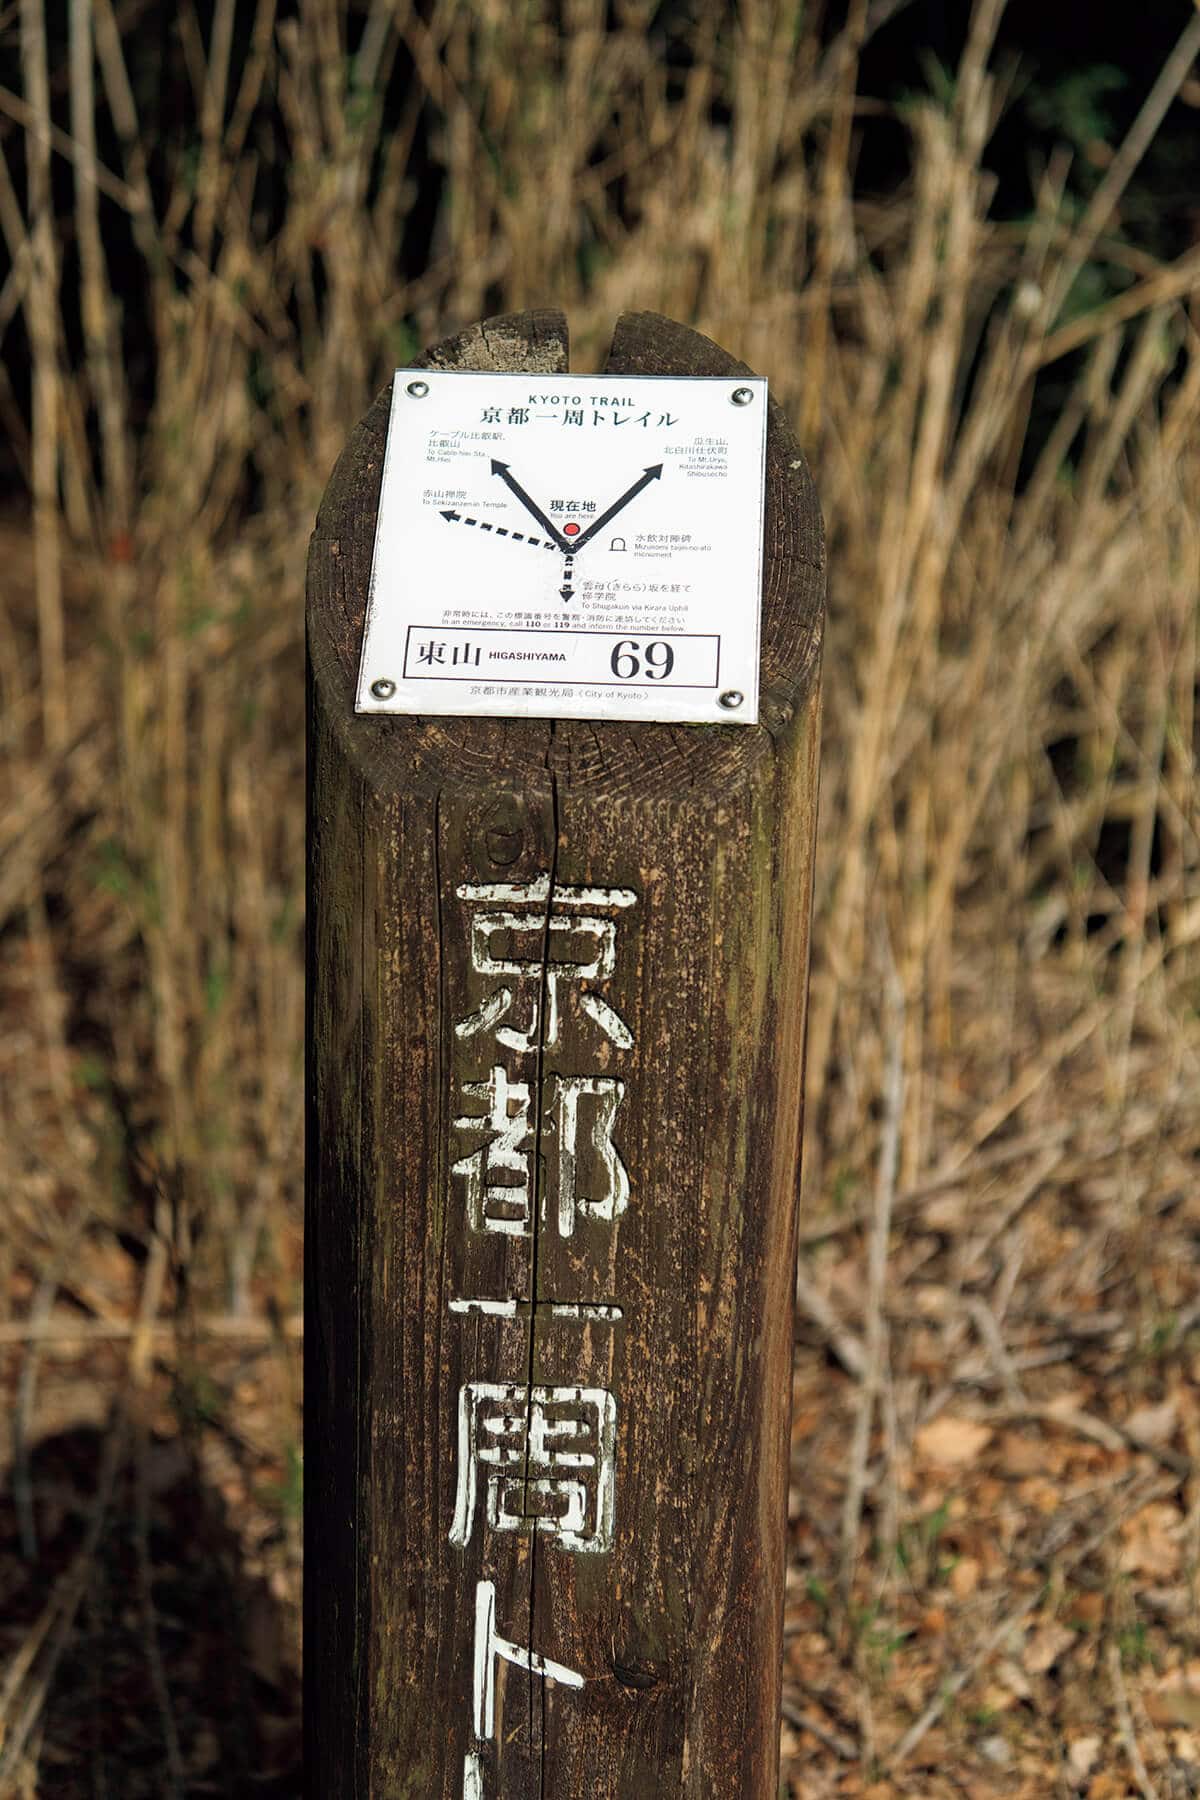 「京都一周トレイル 東山69」の道標